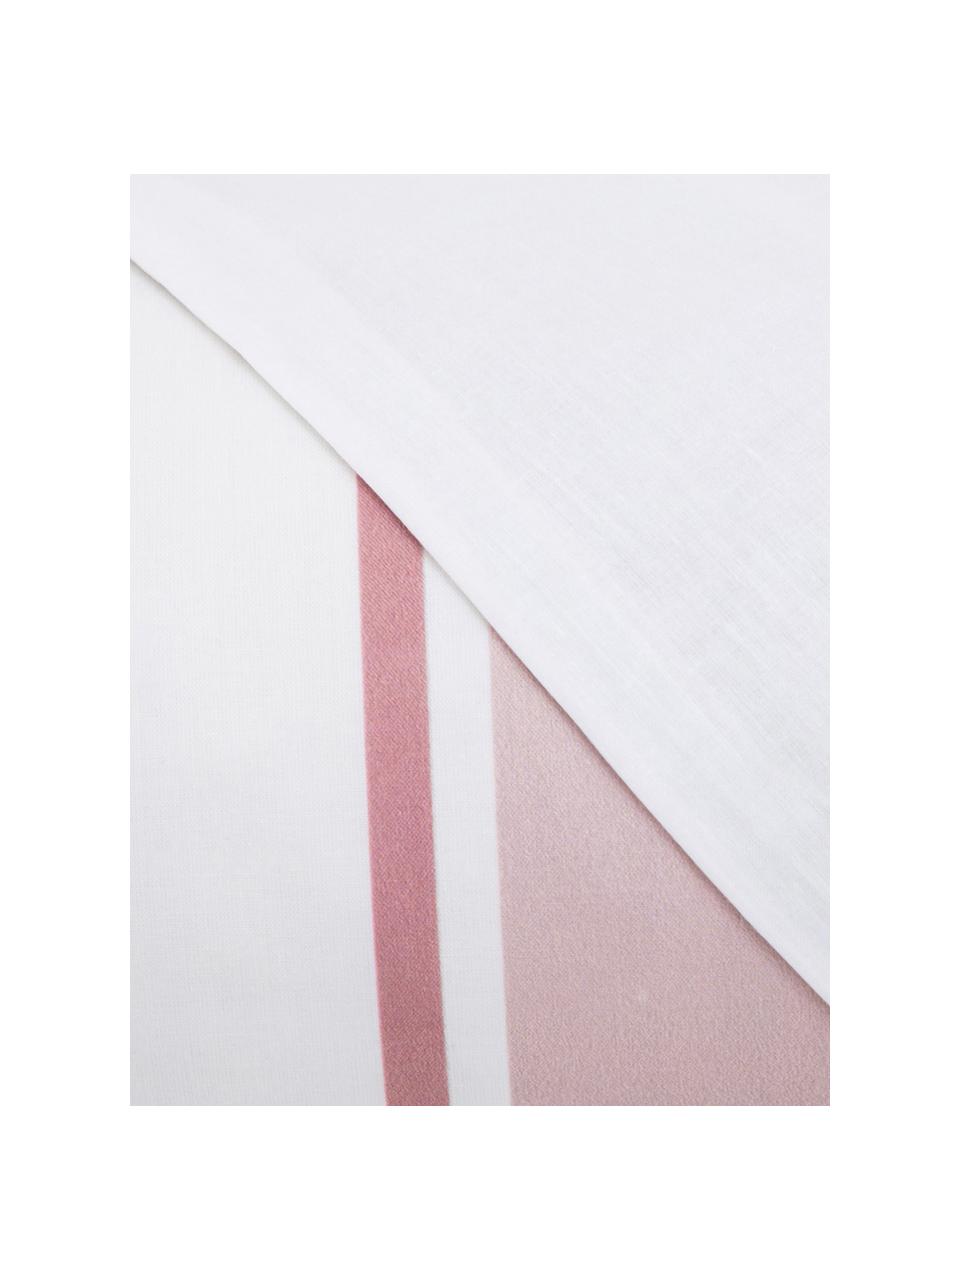 Parure copripiumino in cotone Cappo, Cotone, Fronte: rosso, rosa, verde oliva, marrone chiaro, bianco Retro: bianco, 200 x 200 cm